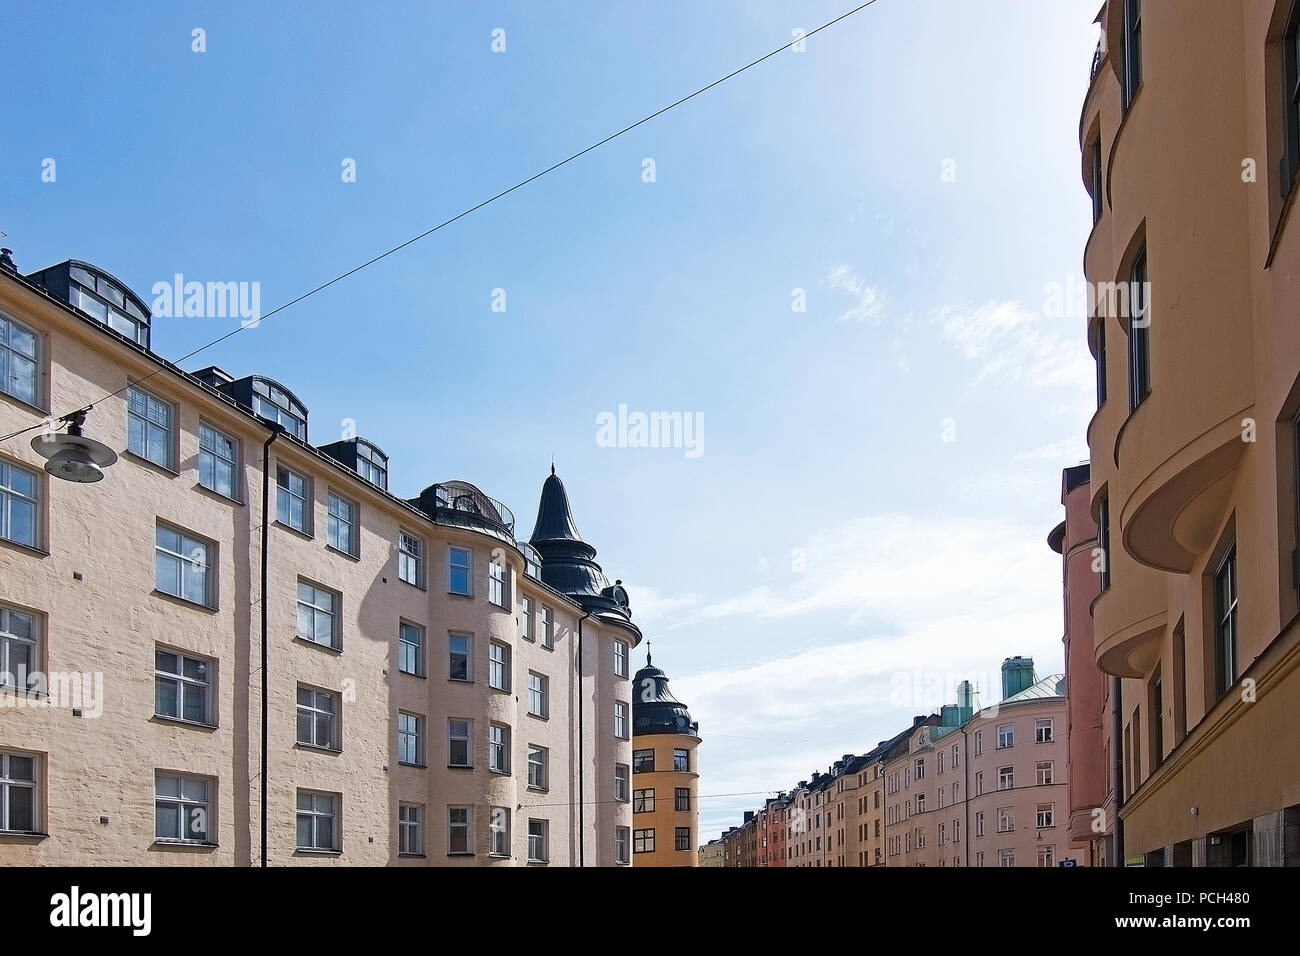 Vasastan typische jahrhundert alte Gebäude in Gelb reibeputz in Stockholm, Schweden. Stockfoto